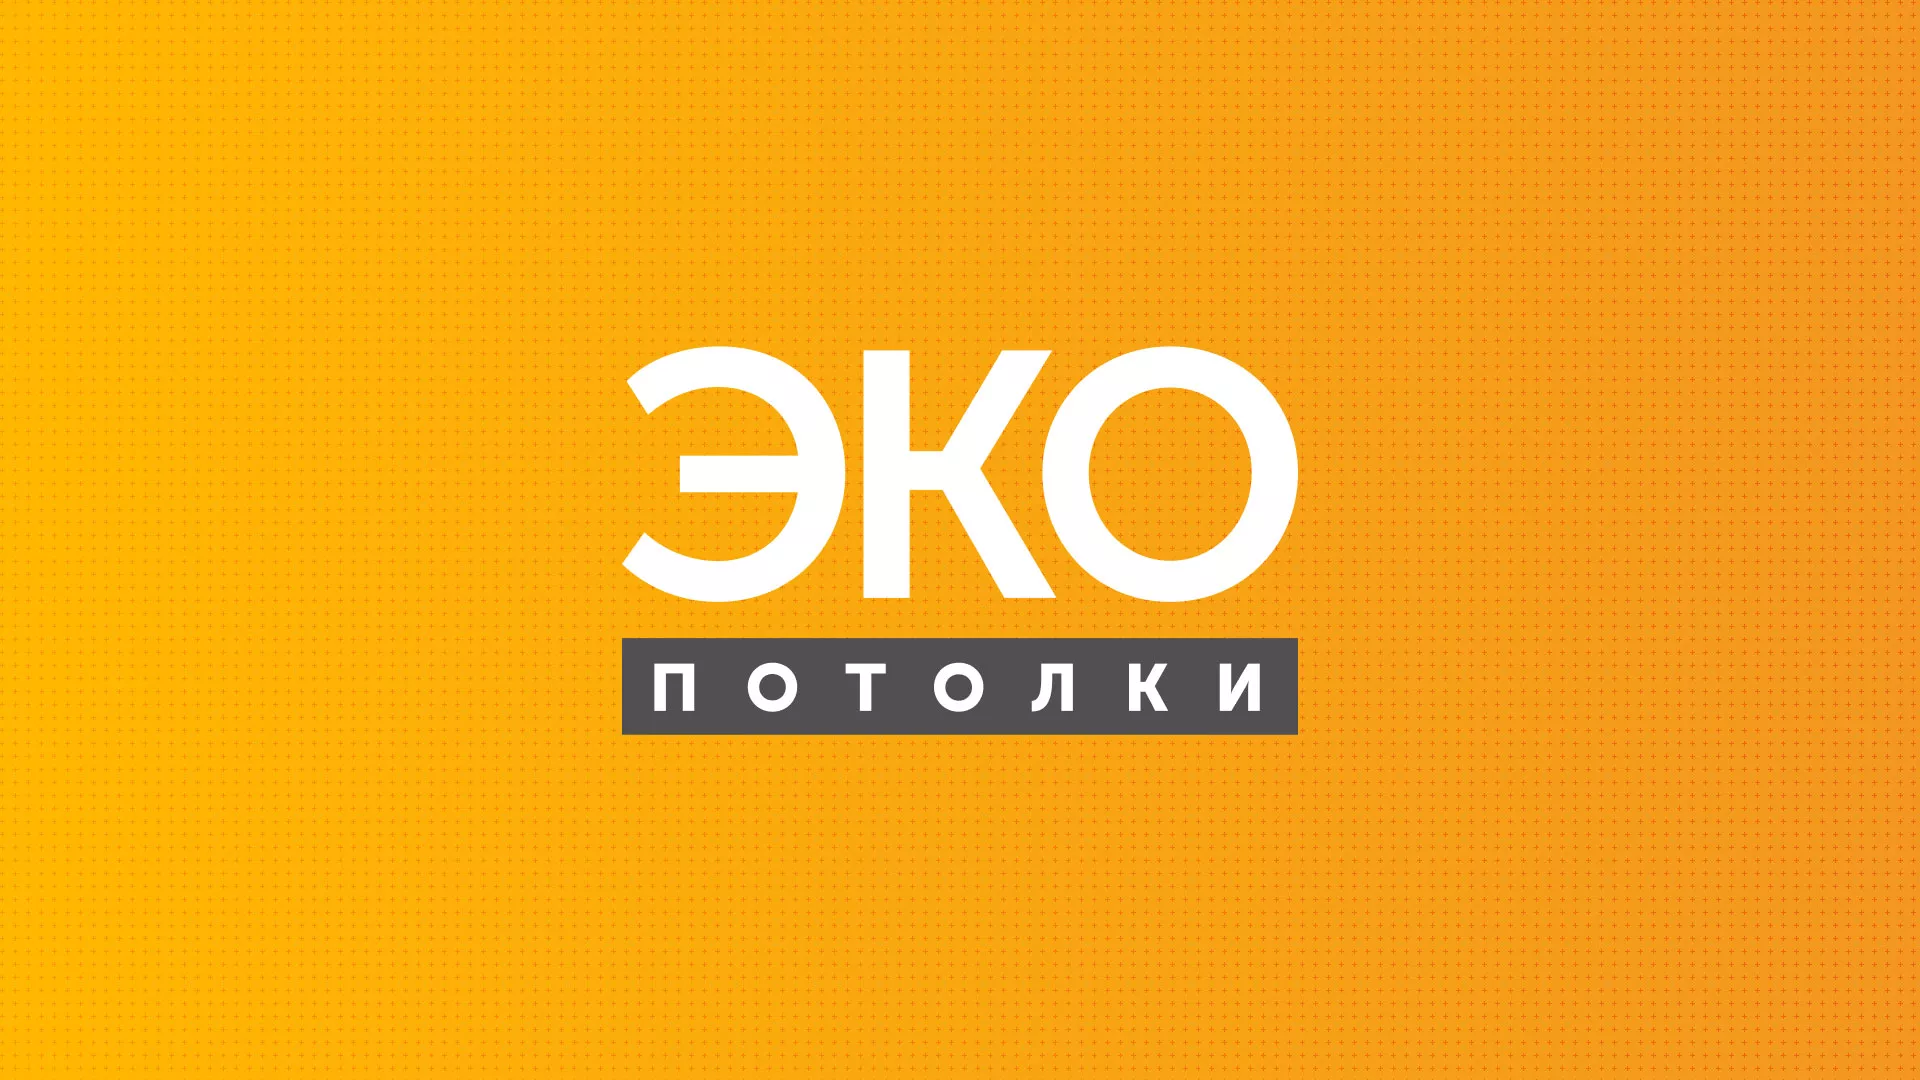 Разработка сайта по натяжным потолкам «Эко Потолки» в Высоцке